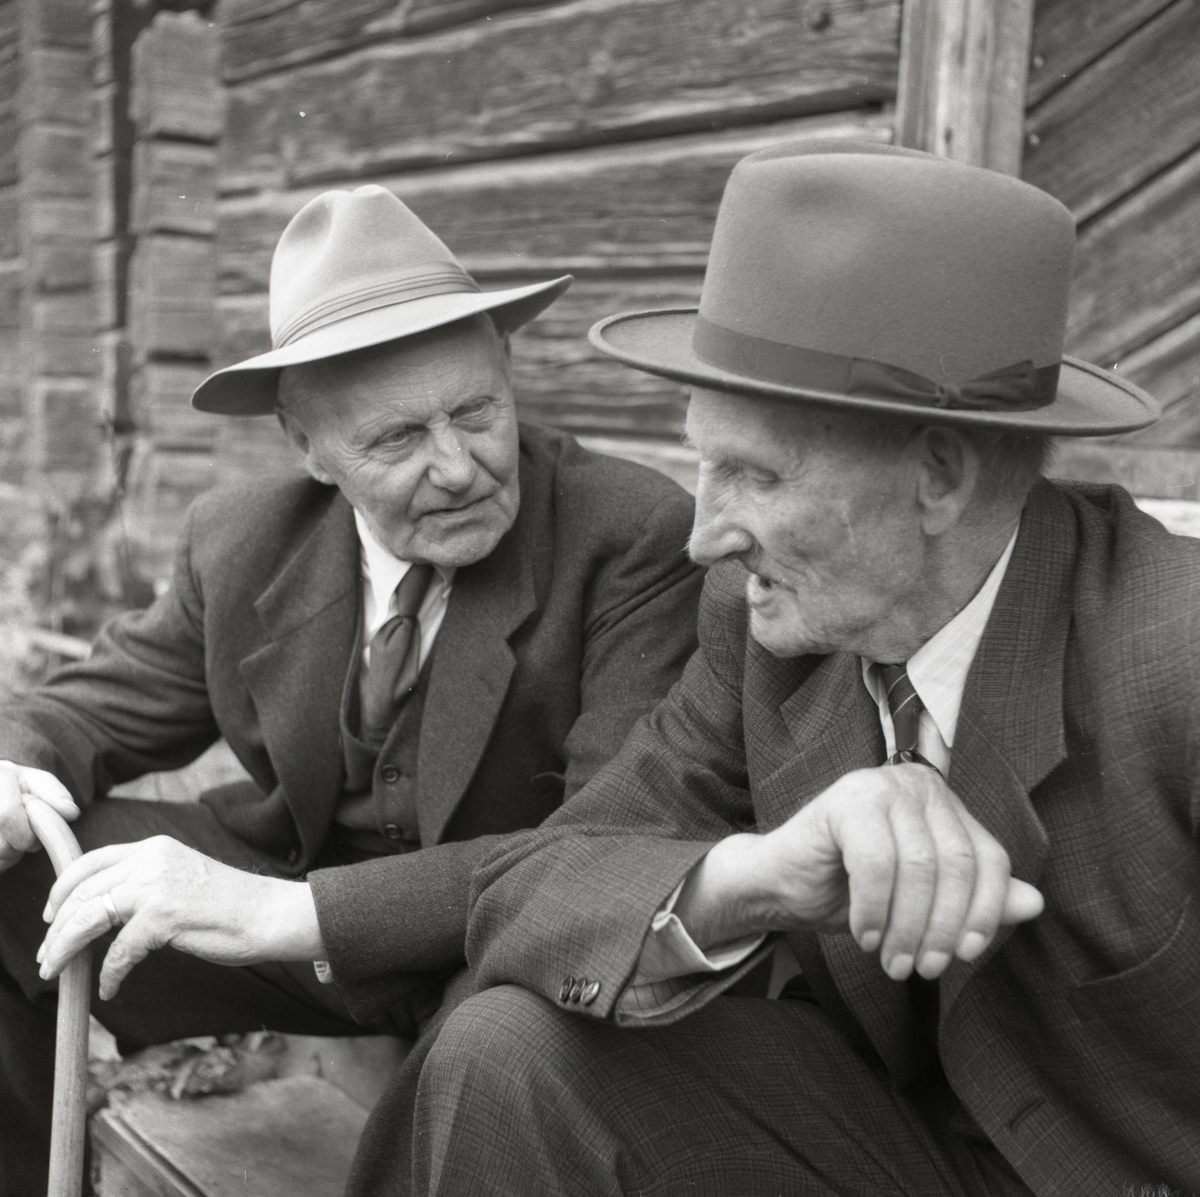 Två män iförda hatt, slips och kostym samtalar.